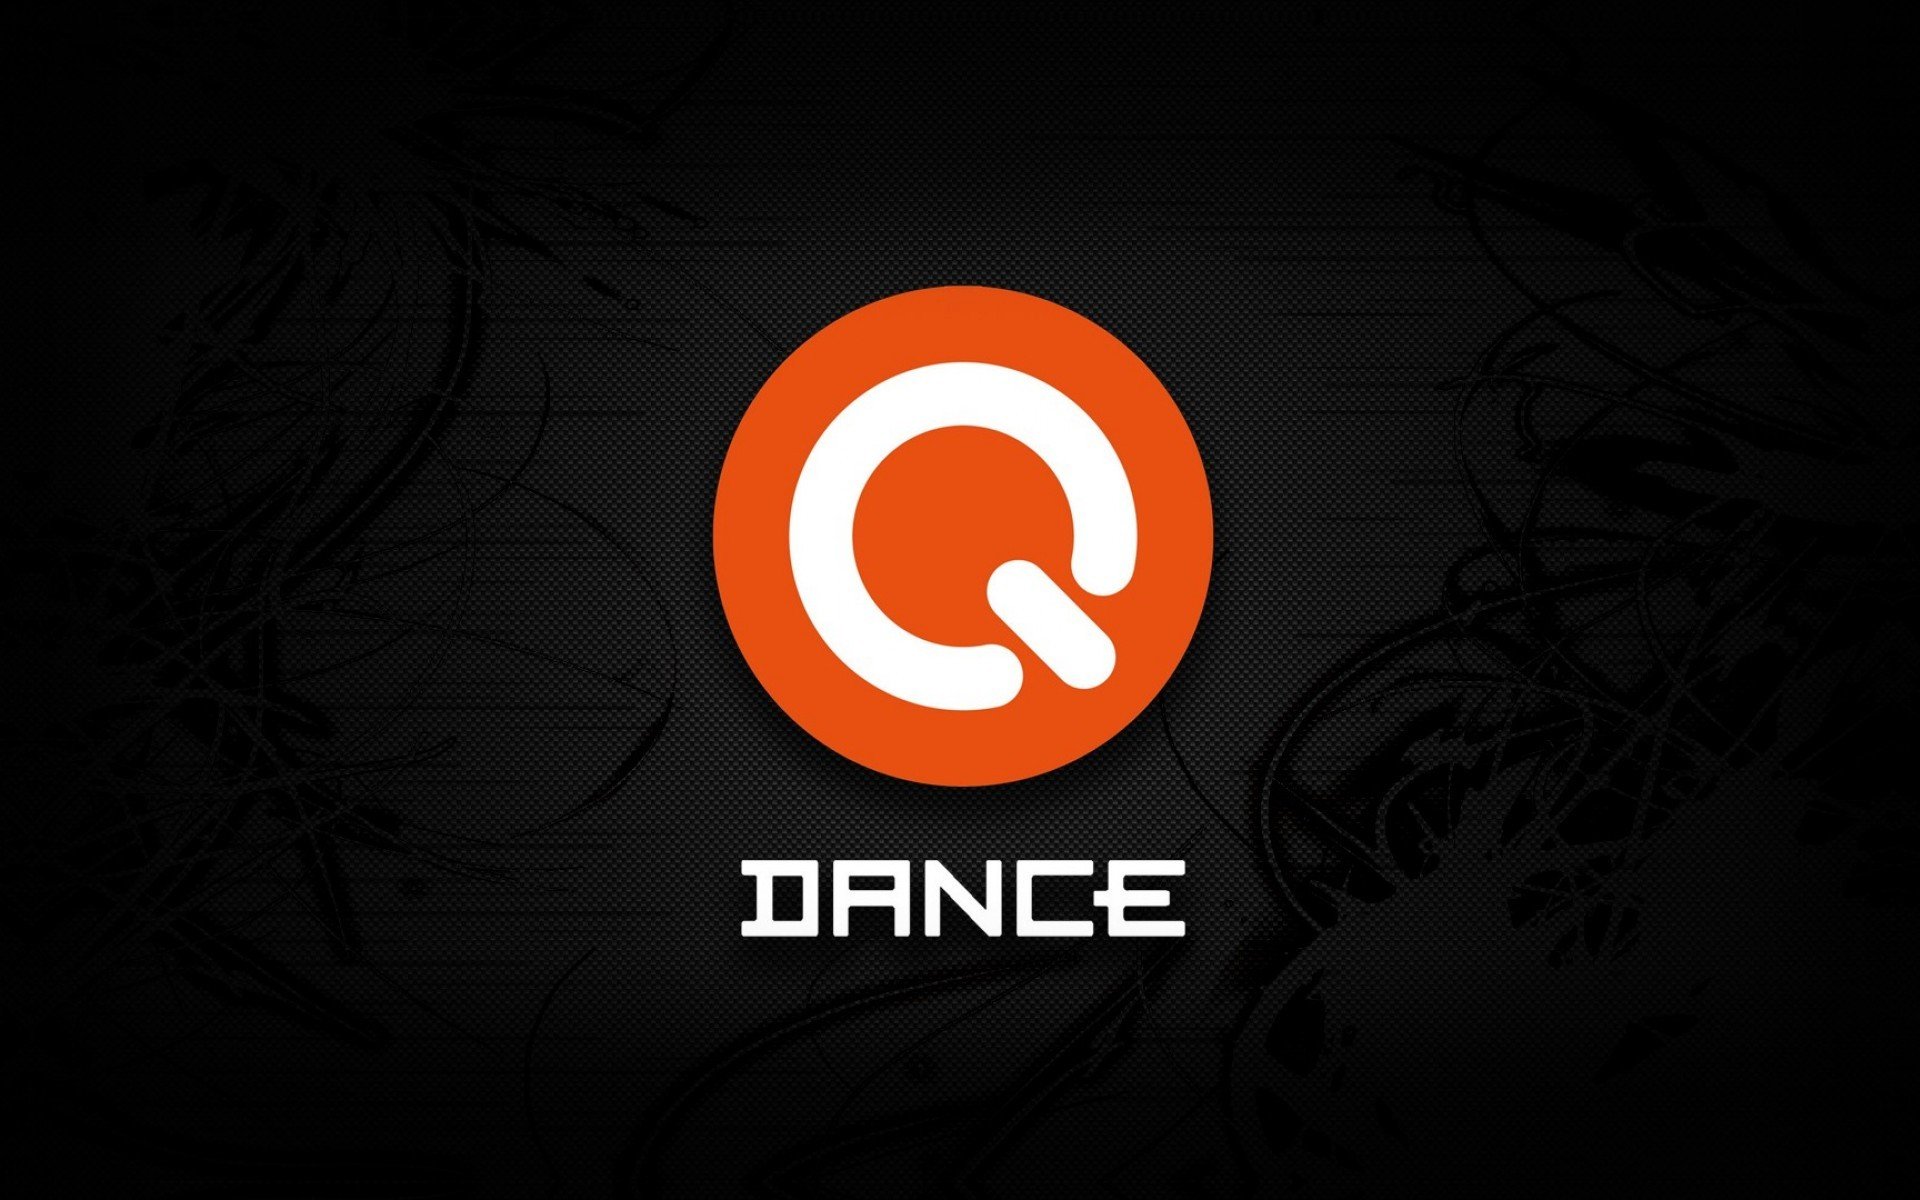 Q dance Wallpaper